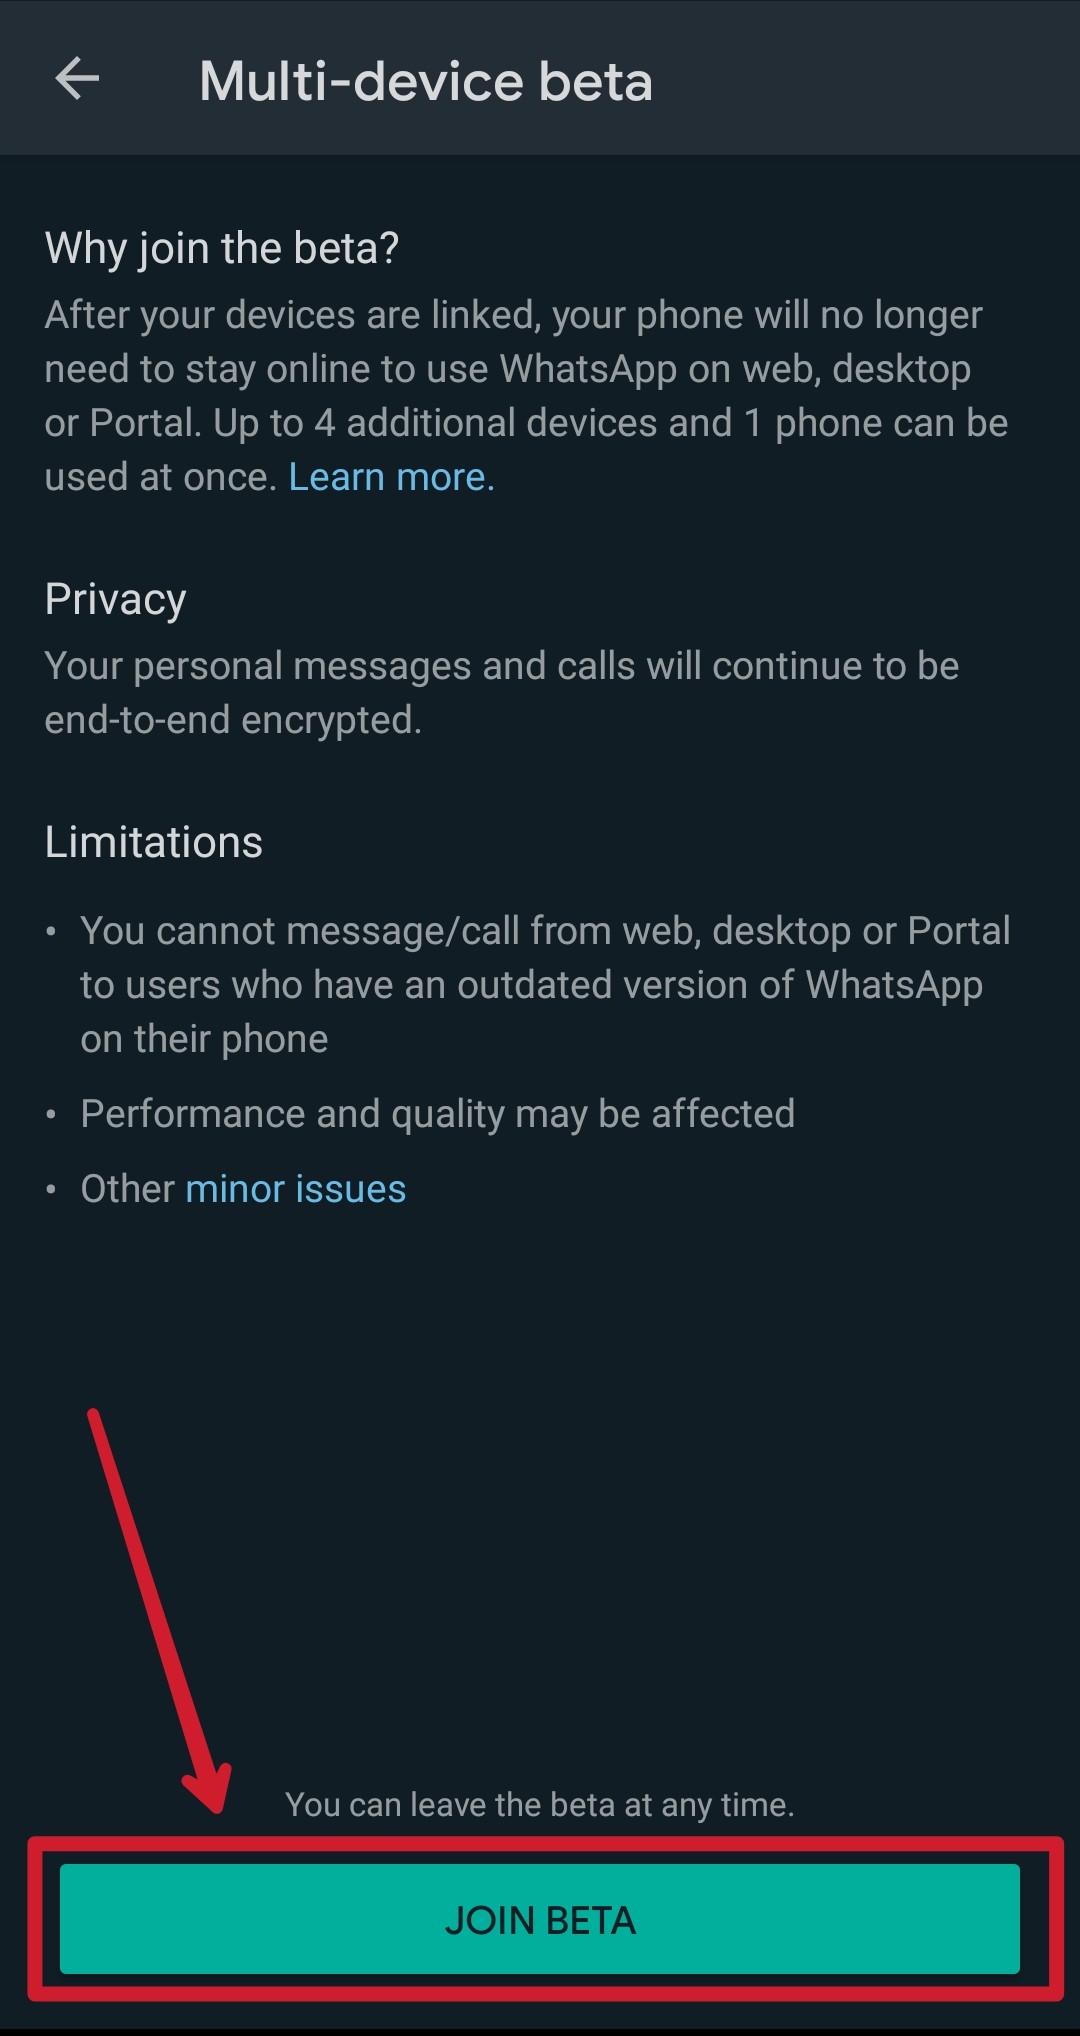 únete a la beta para la función multidispositivo de whatsapp